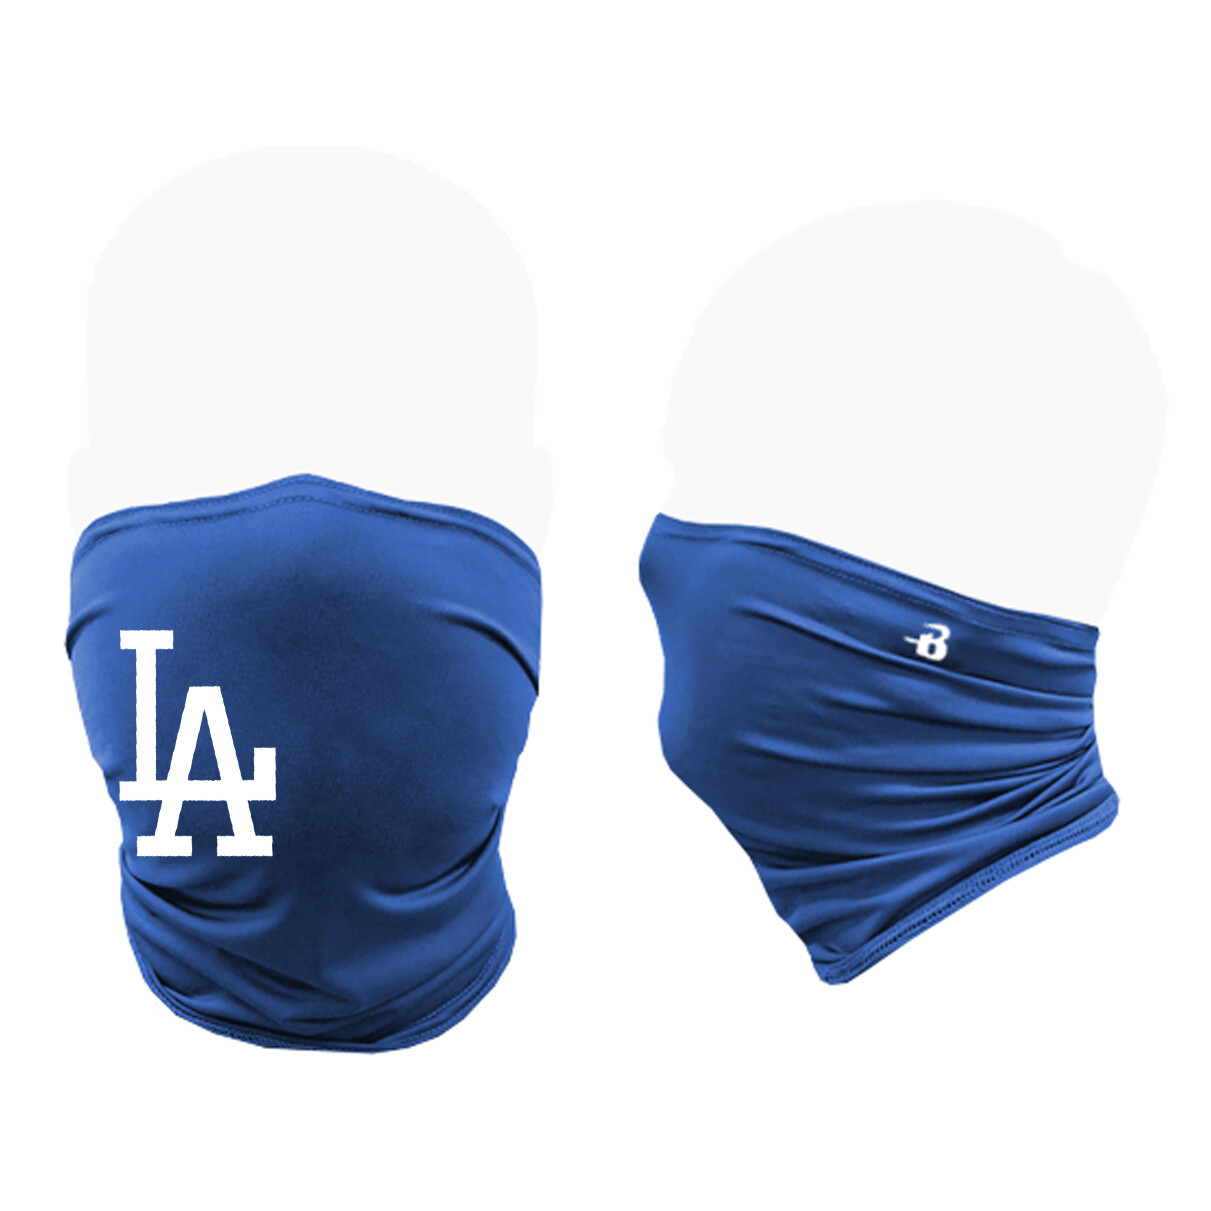 LA Dodgers Performance Activity Mask